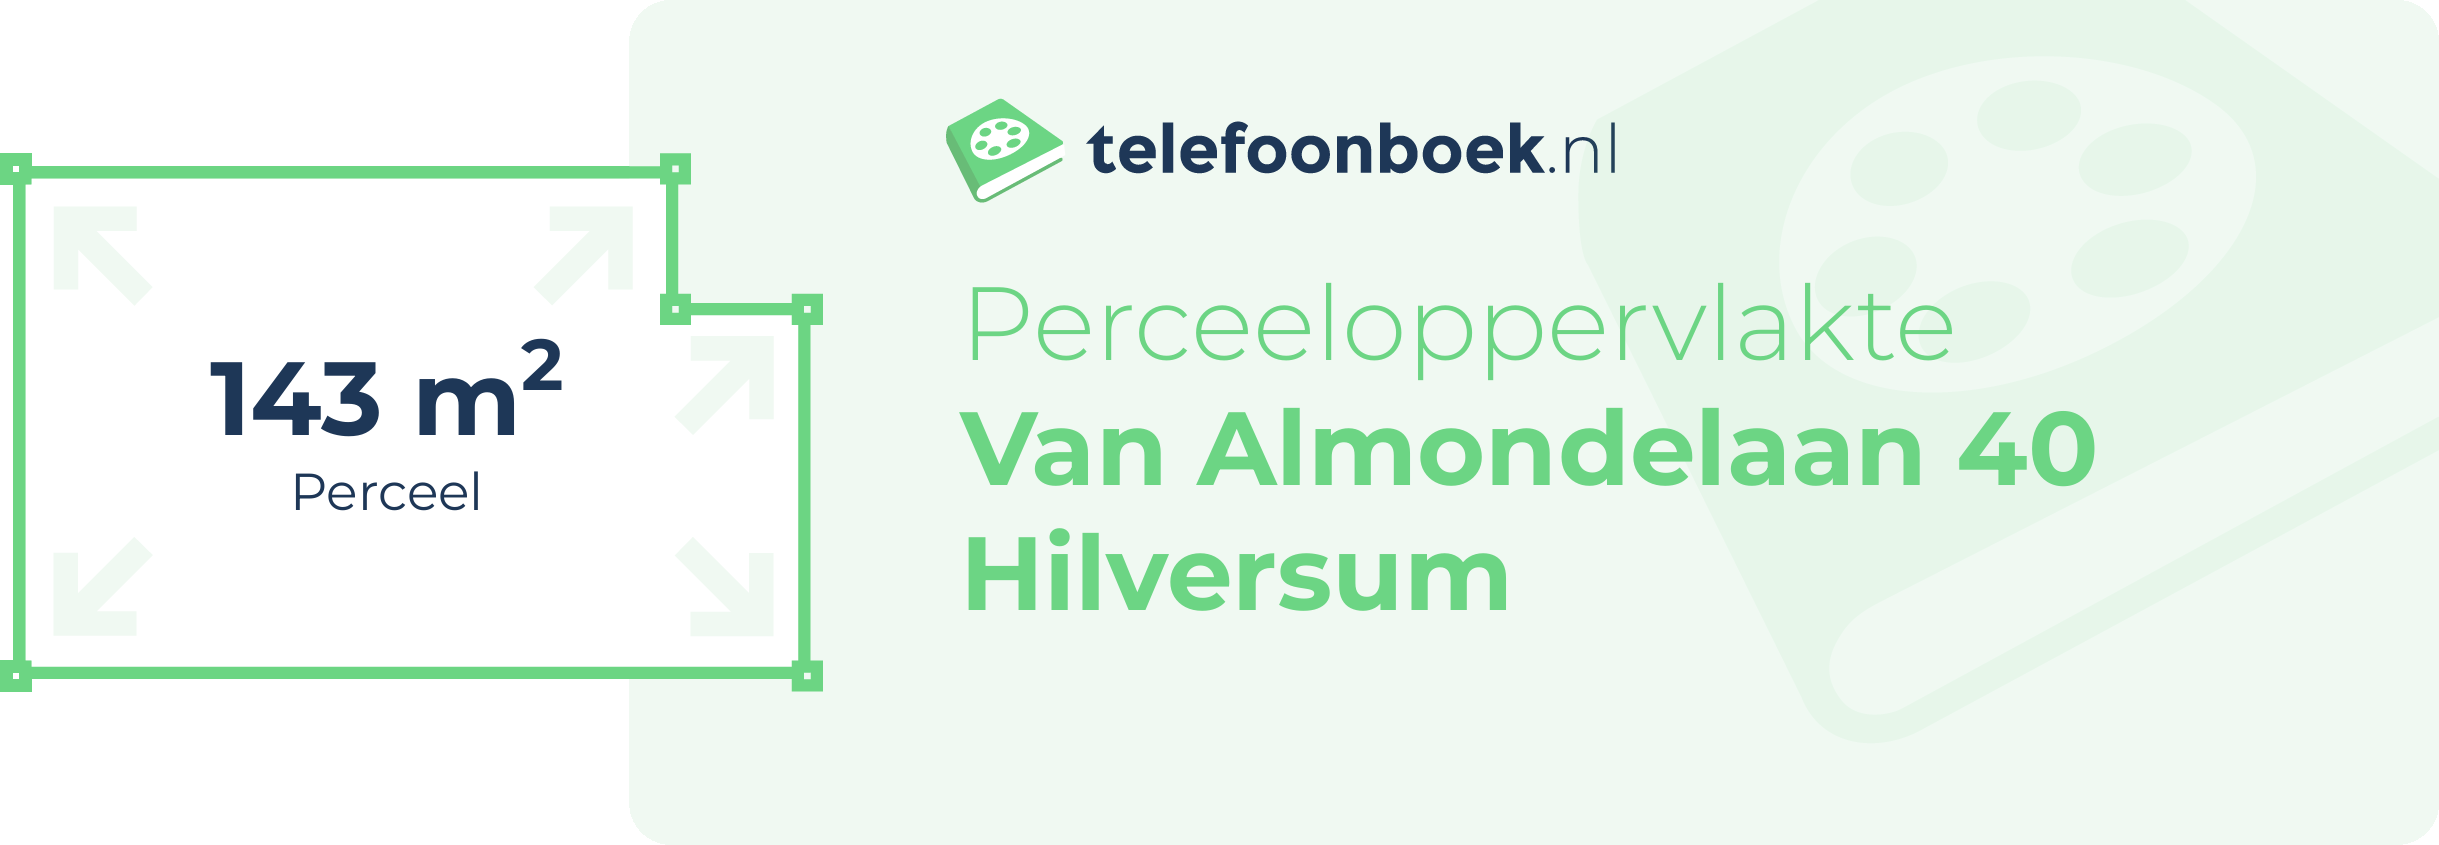 Perceeloppervlakte Van Almondelaan 40 Hilversum